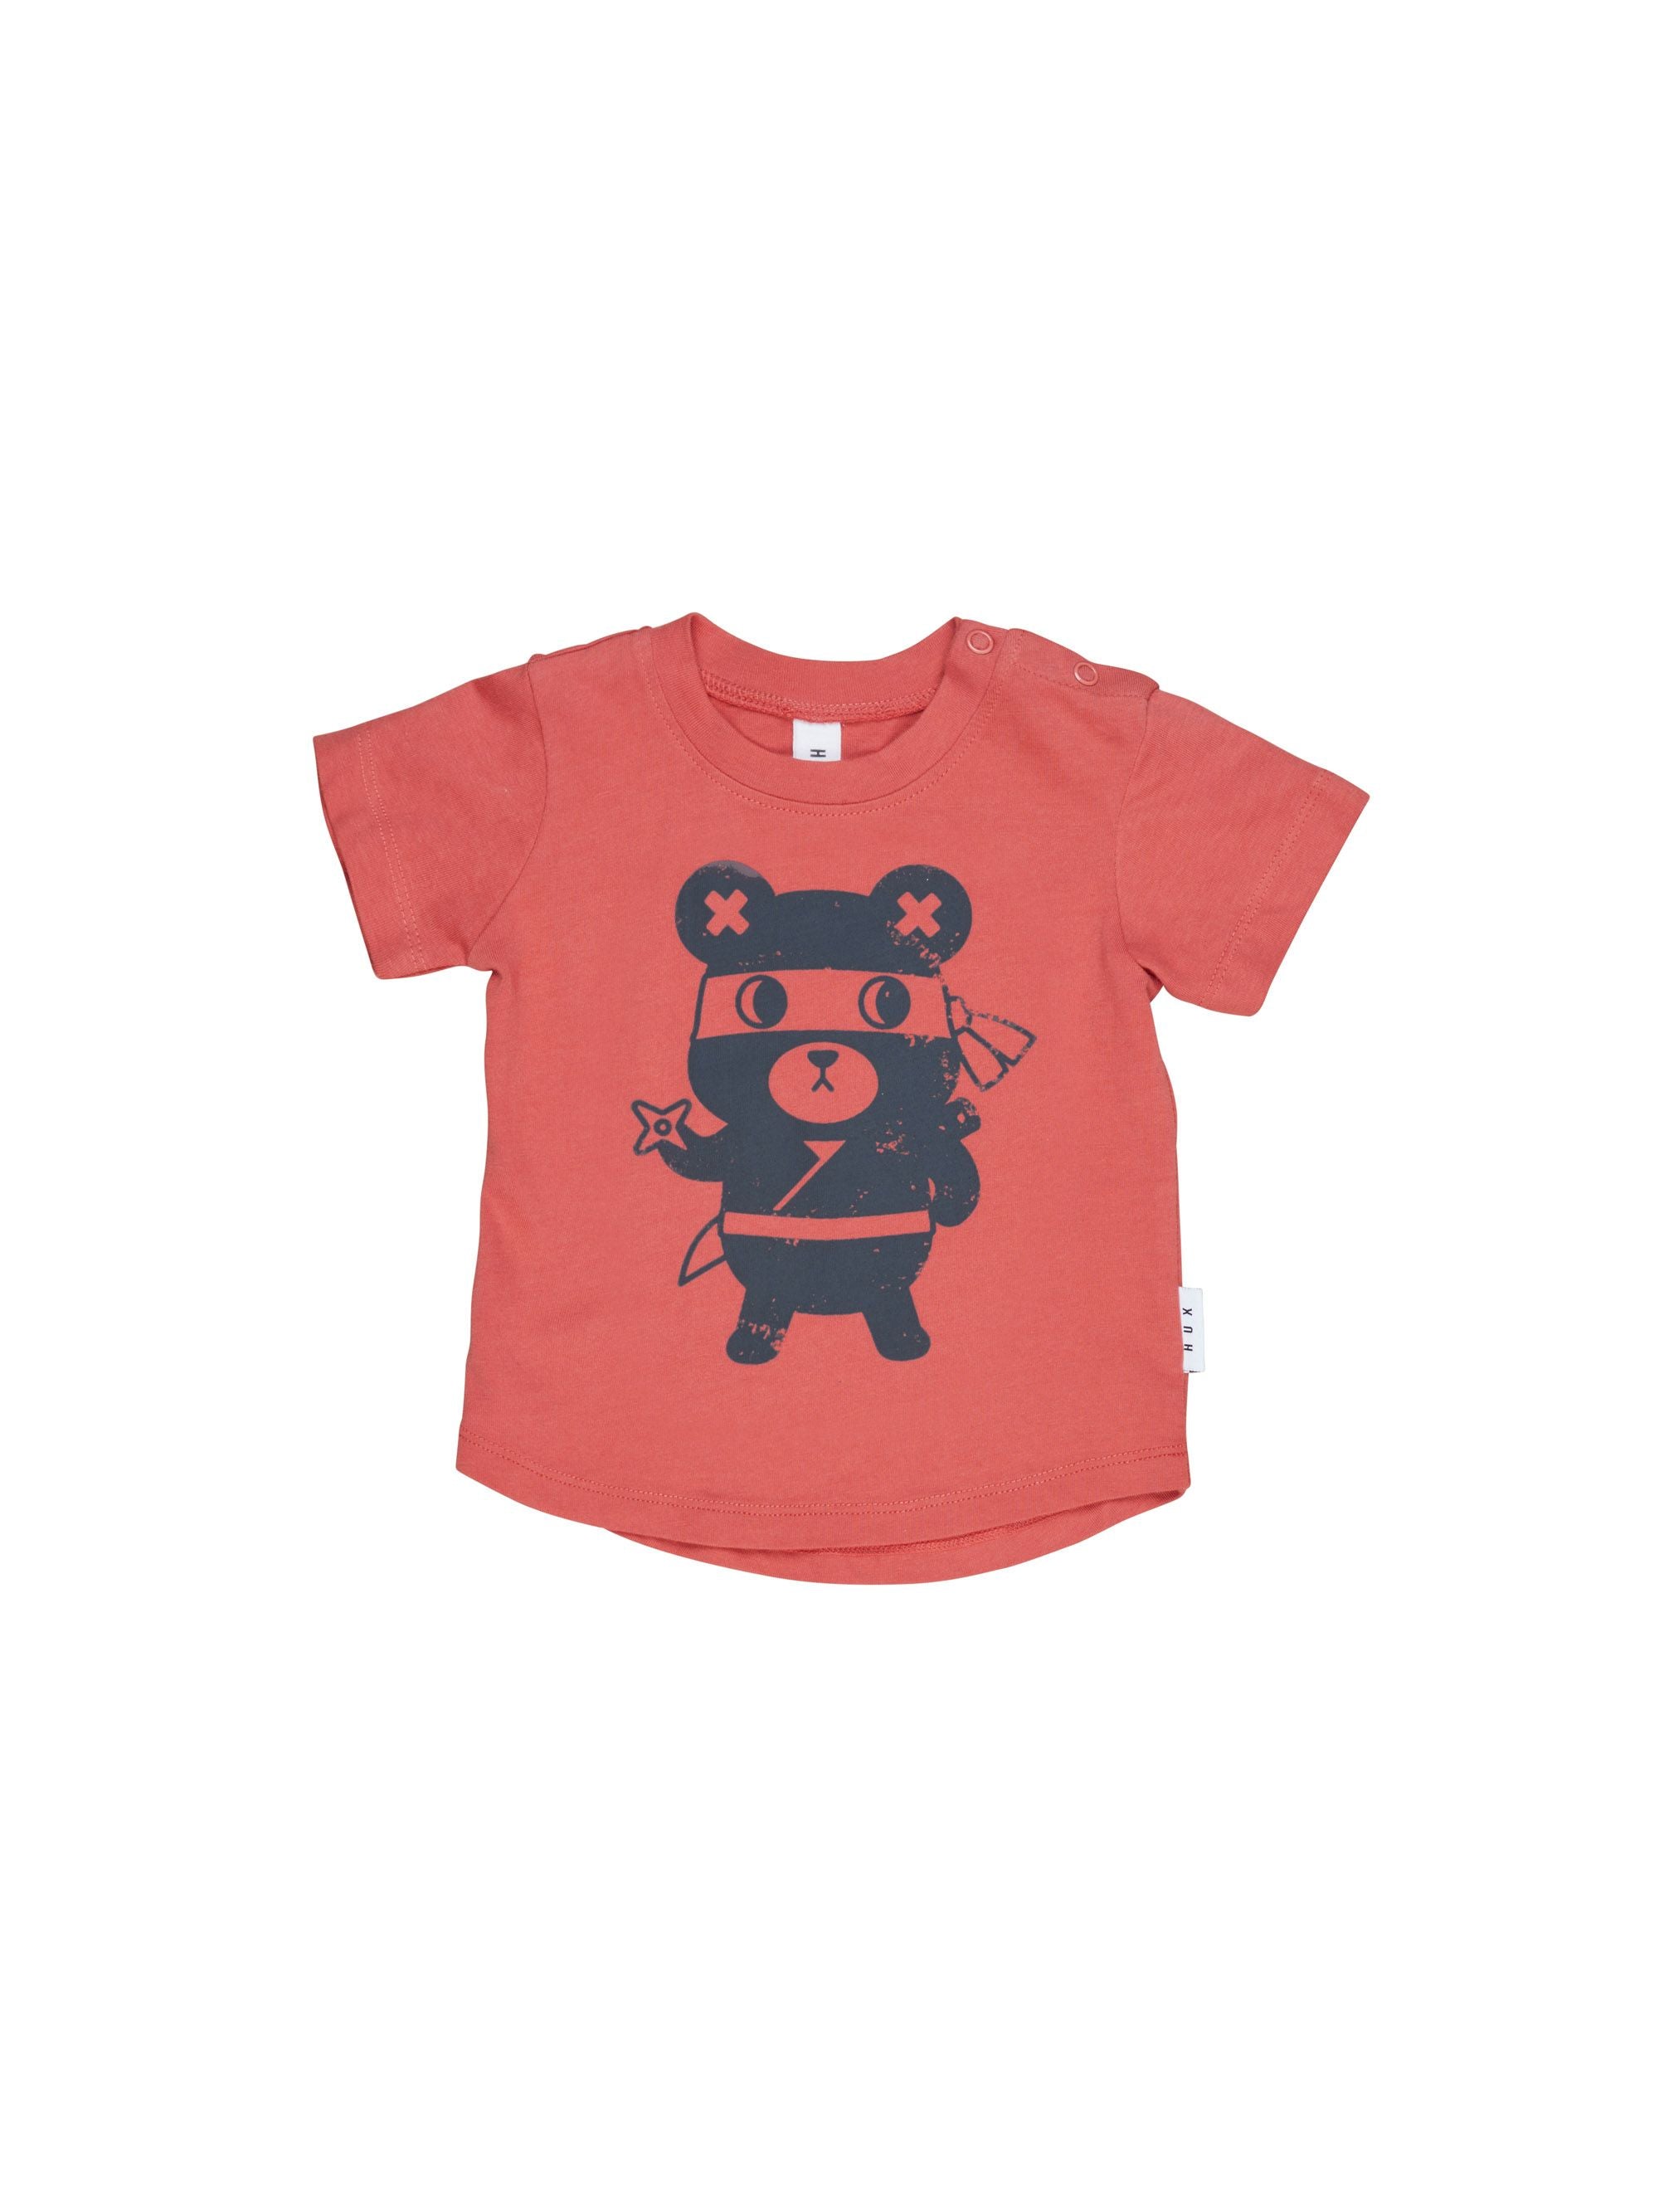 Ninja Bear T-Shirt